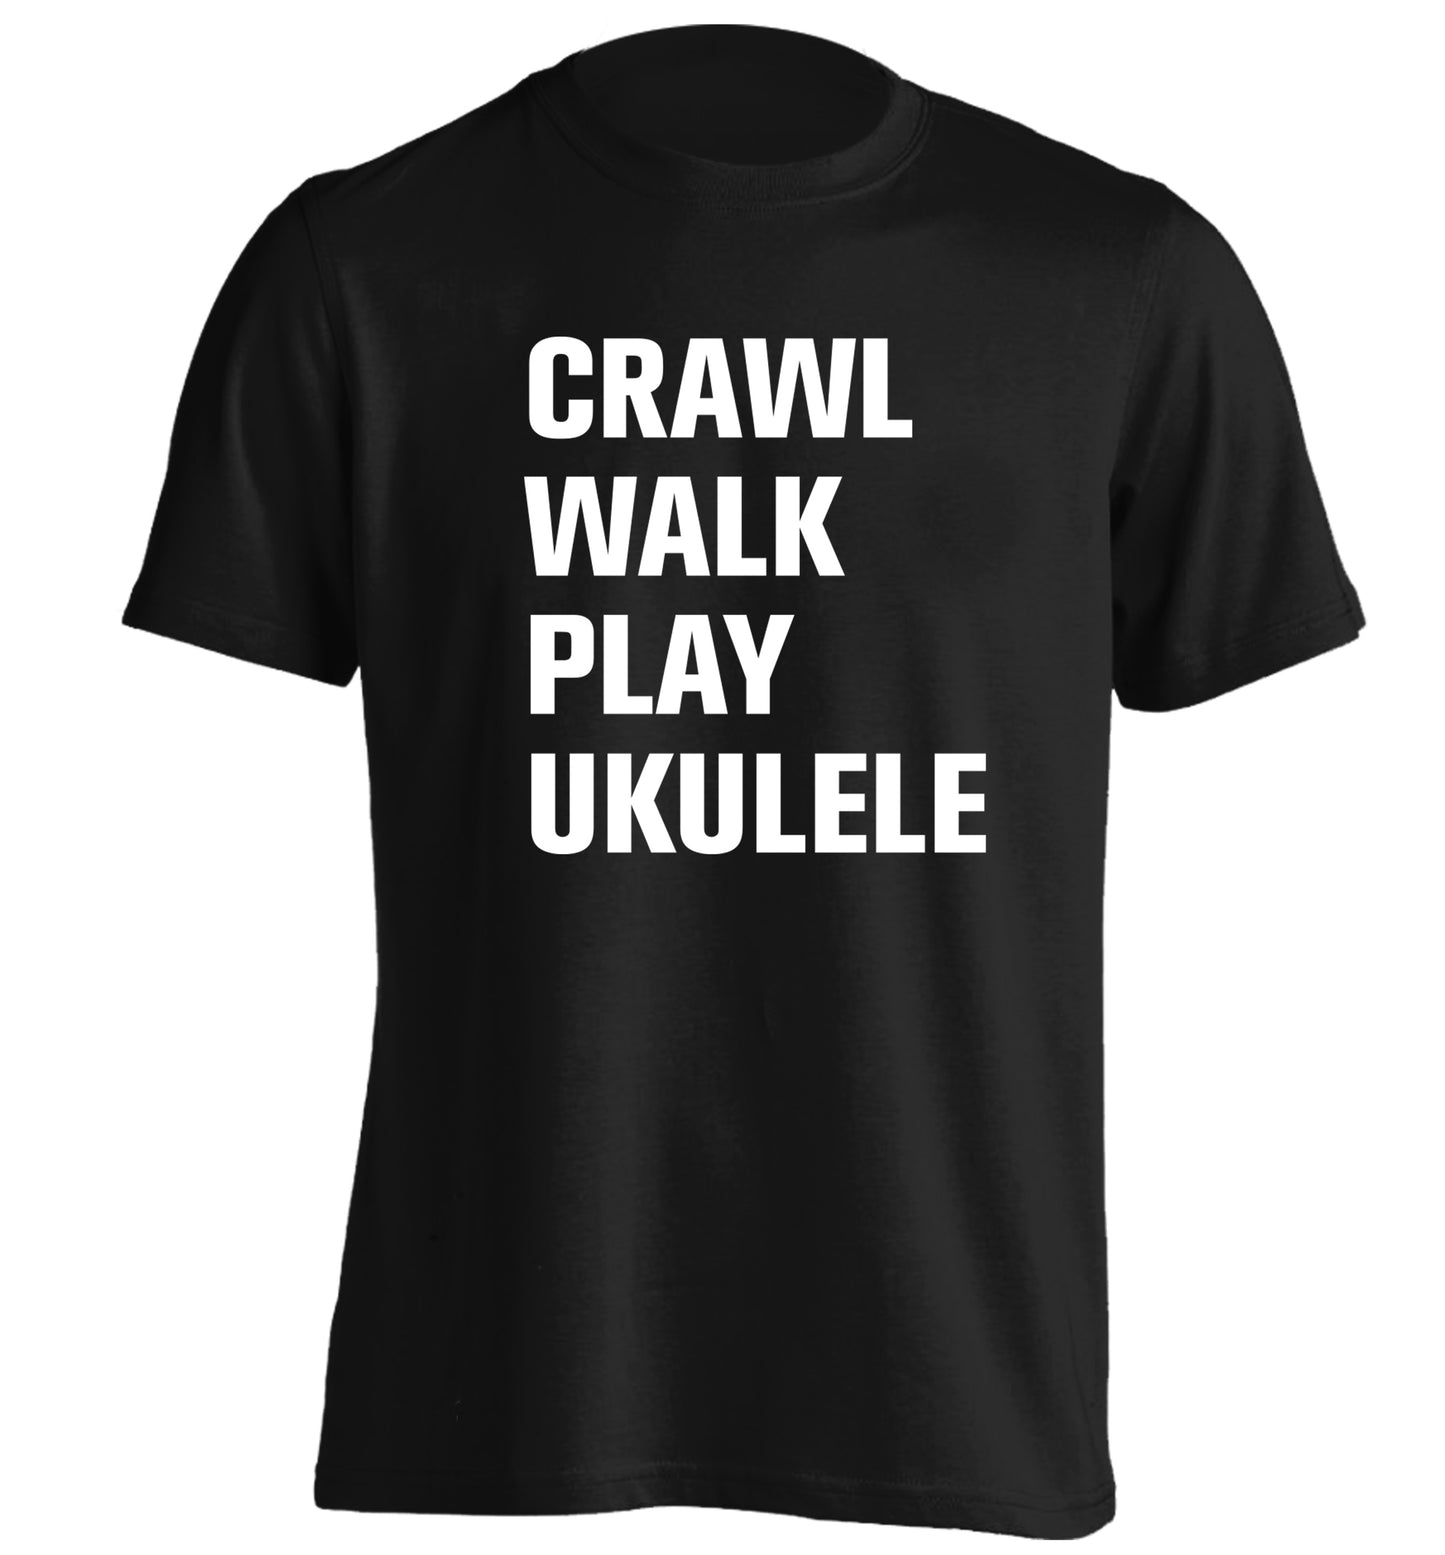 Crawl walk play ukulele adults unisex black Tshirt 2XL